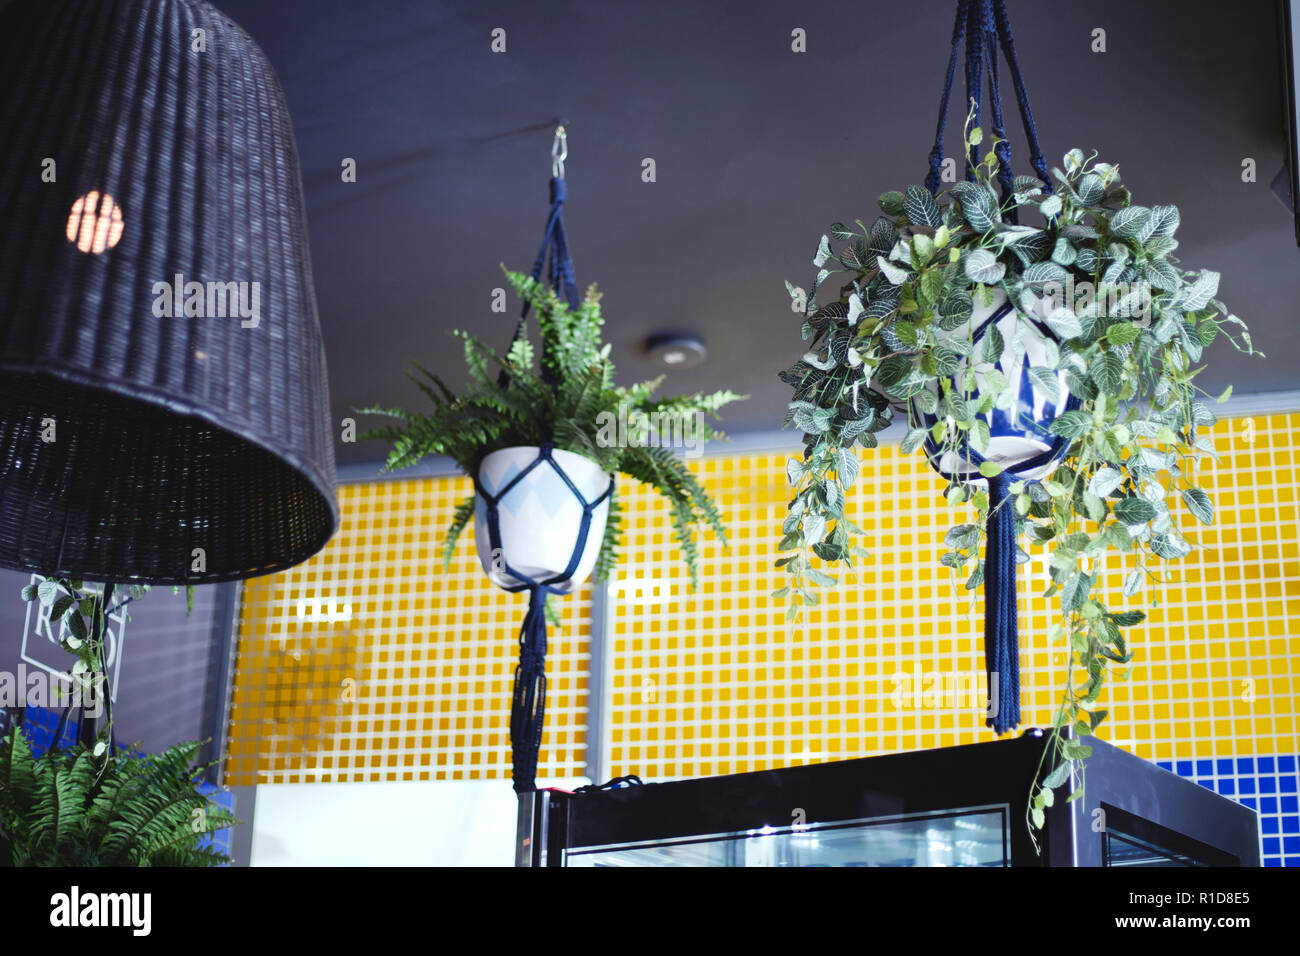 Les plantes en pot suspendu dans une chambre de style urbain. Banque D'Images